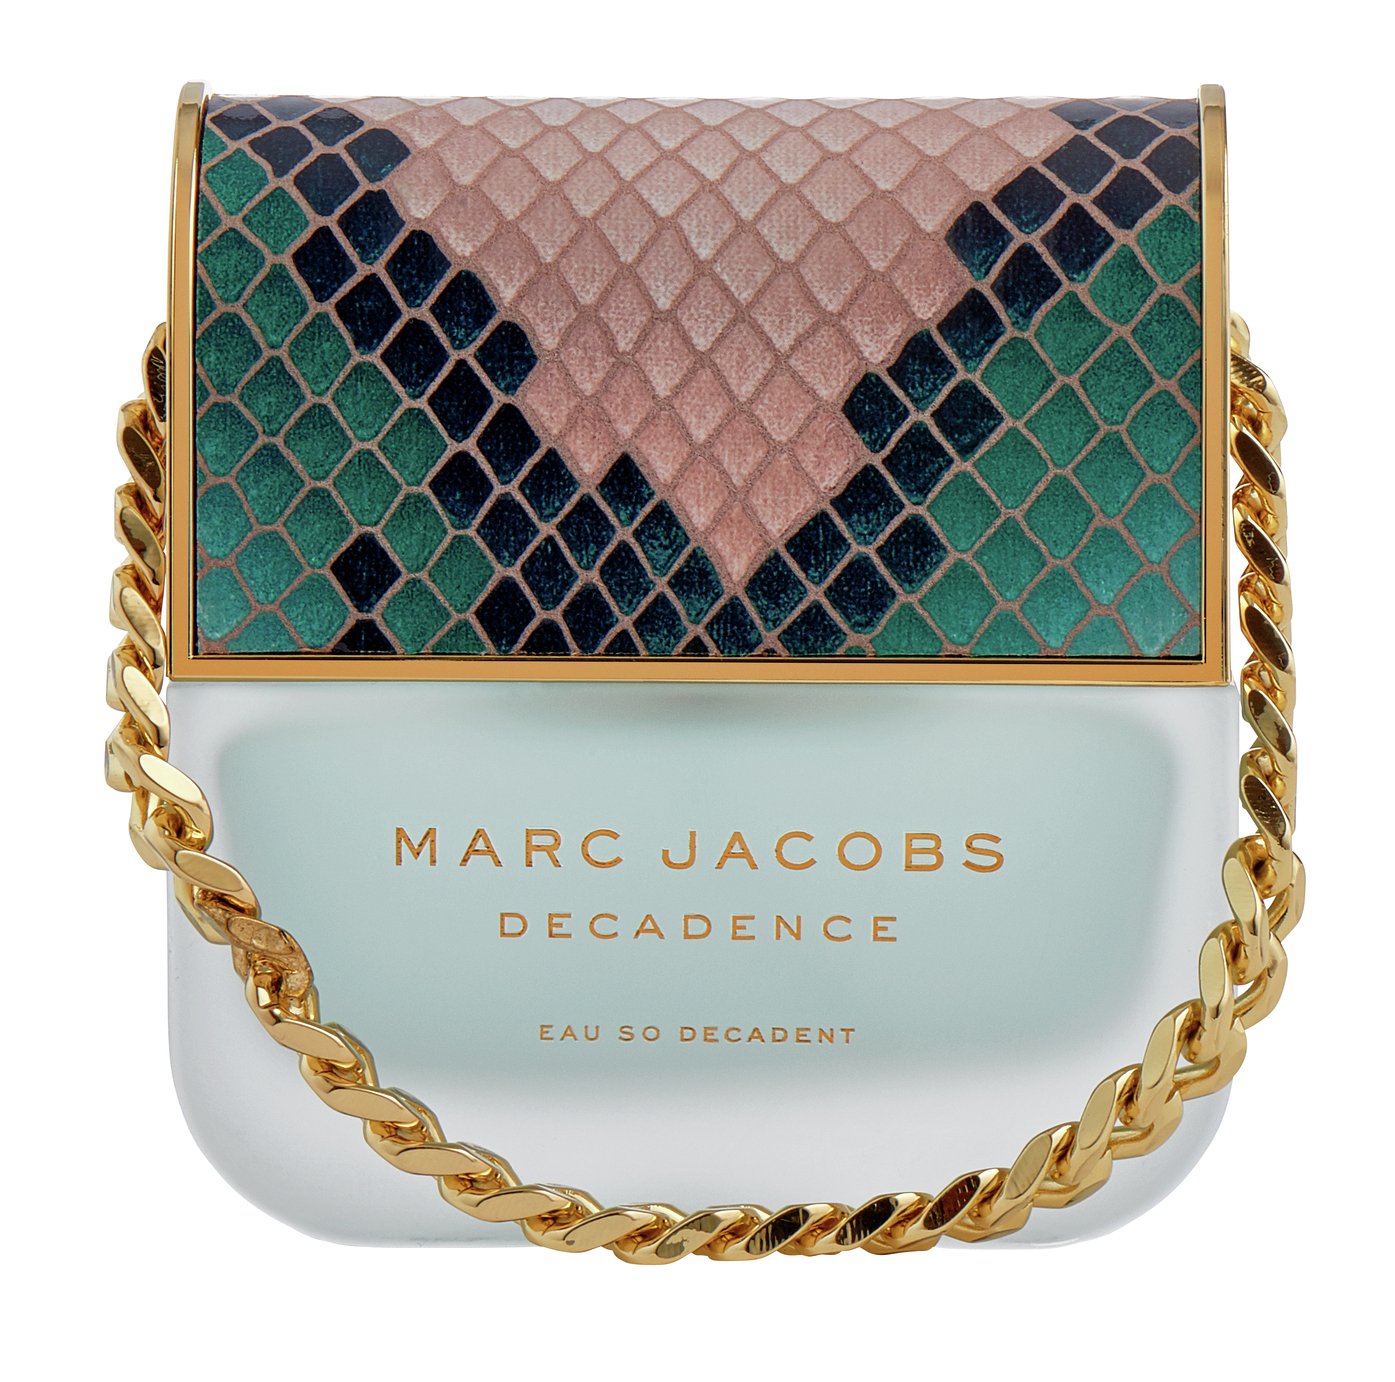 Marc Jacobs Decadence for Women Eau de Toilette Reviews